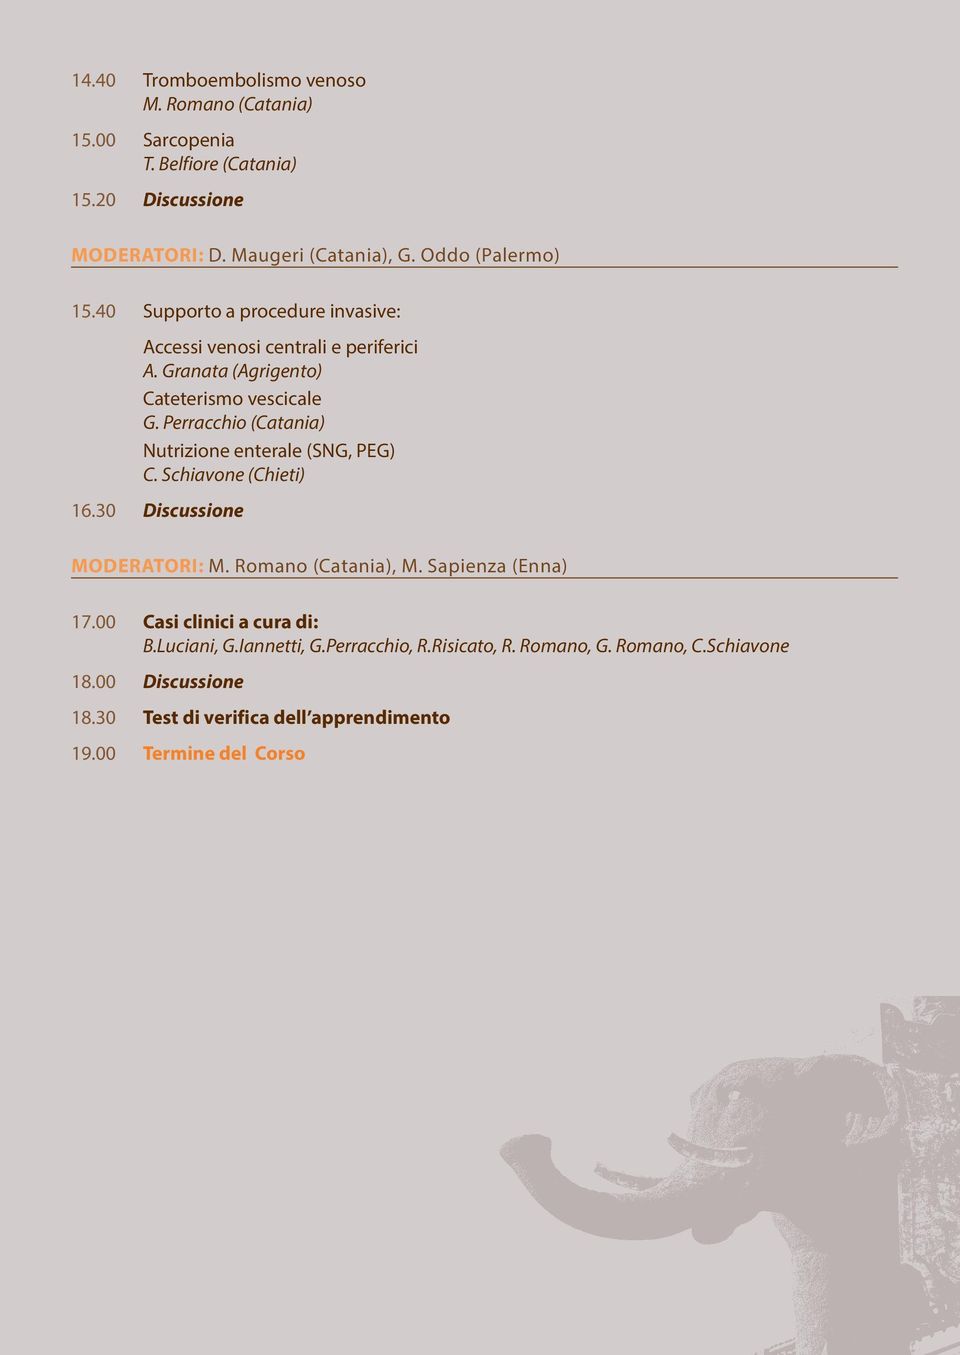 Perracchio (Catania) Nutrizione enterale (SNG, PEG) C. Schiavone (Chieti) 16.30 Discussione MODERATORI: M. Romano (Catania), M. Sapienza (Enna) 17.